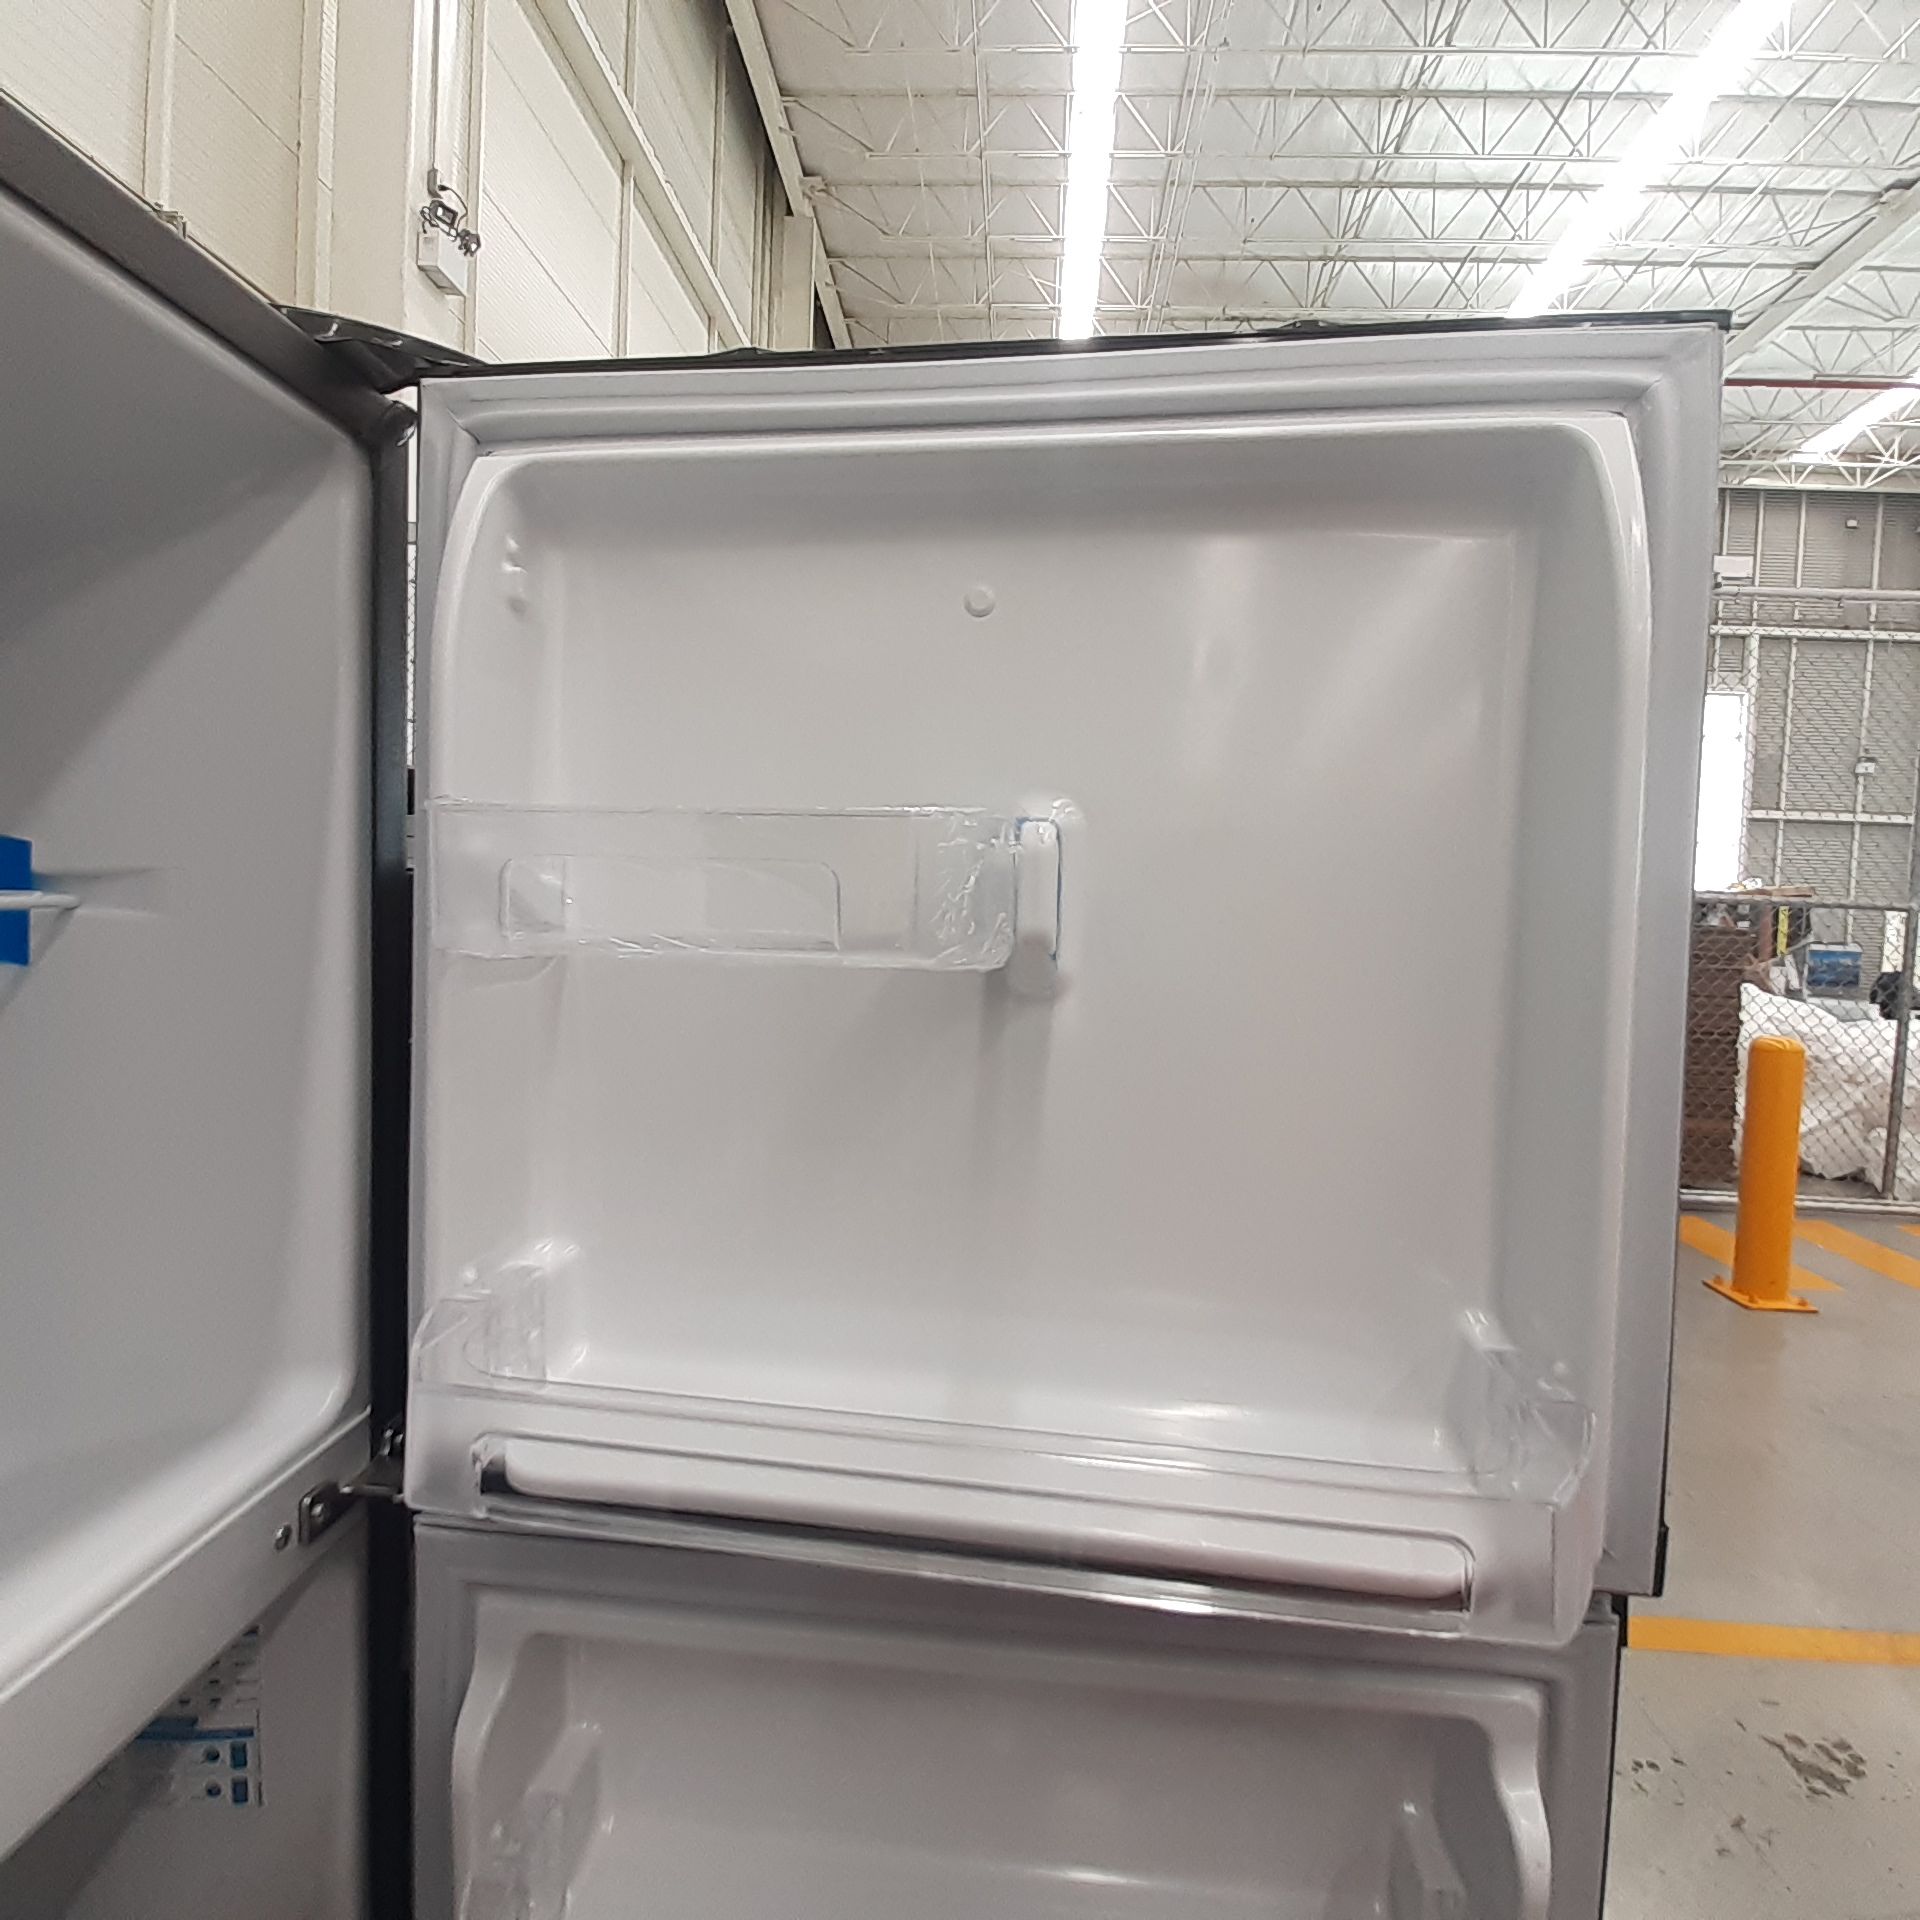 Lote De 2 Refrigeradores Contiene: 1 Refrigerador Marca Mabe, 1 Refrigerador Marca Hisense, Distinto - Image 7 of 14